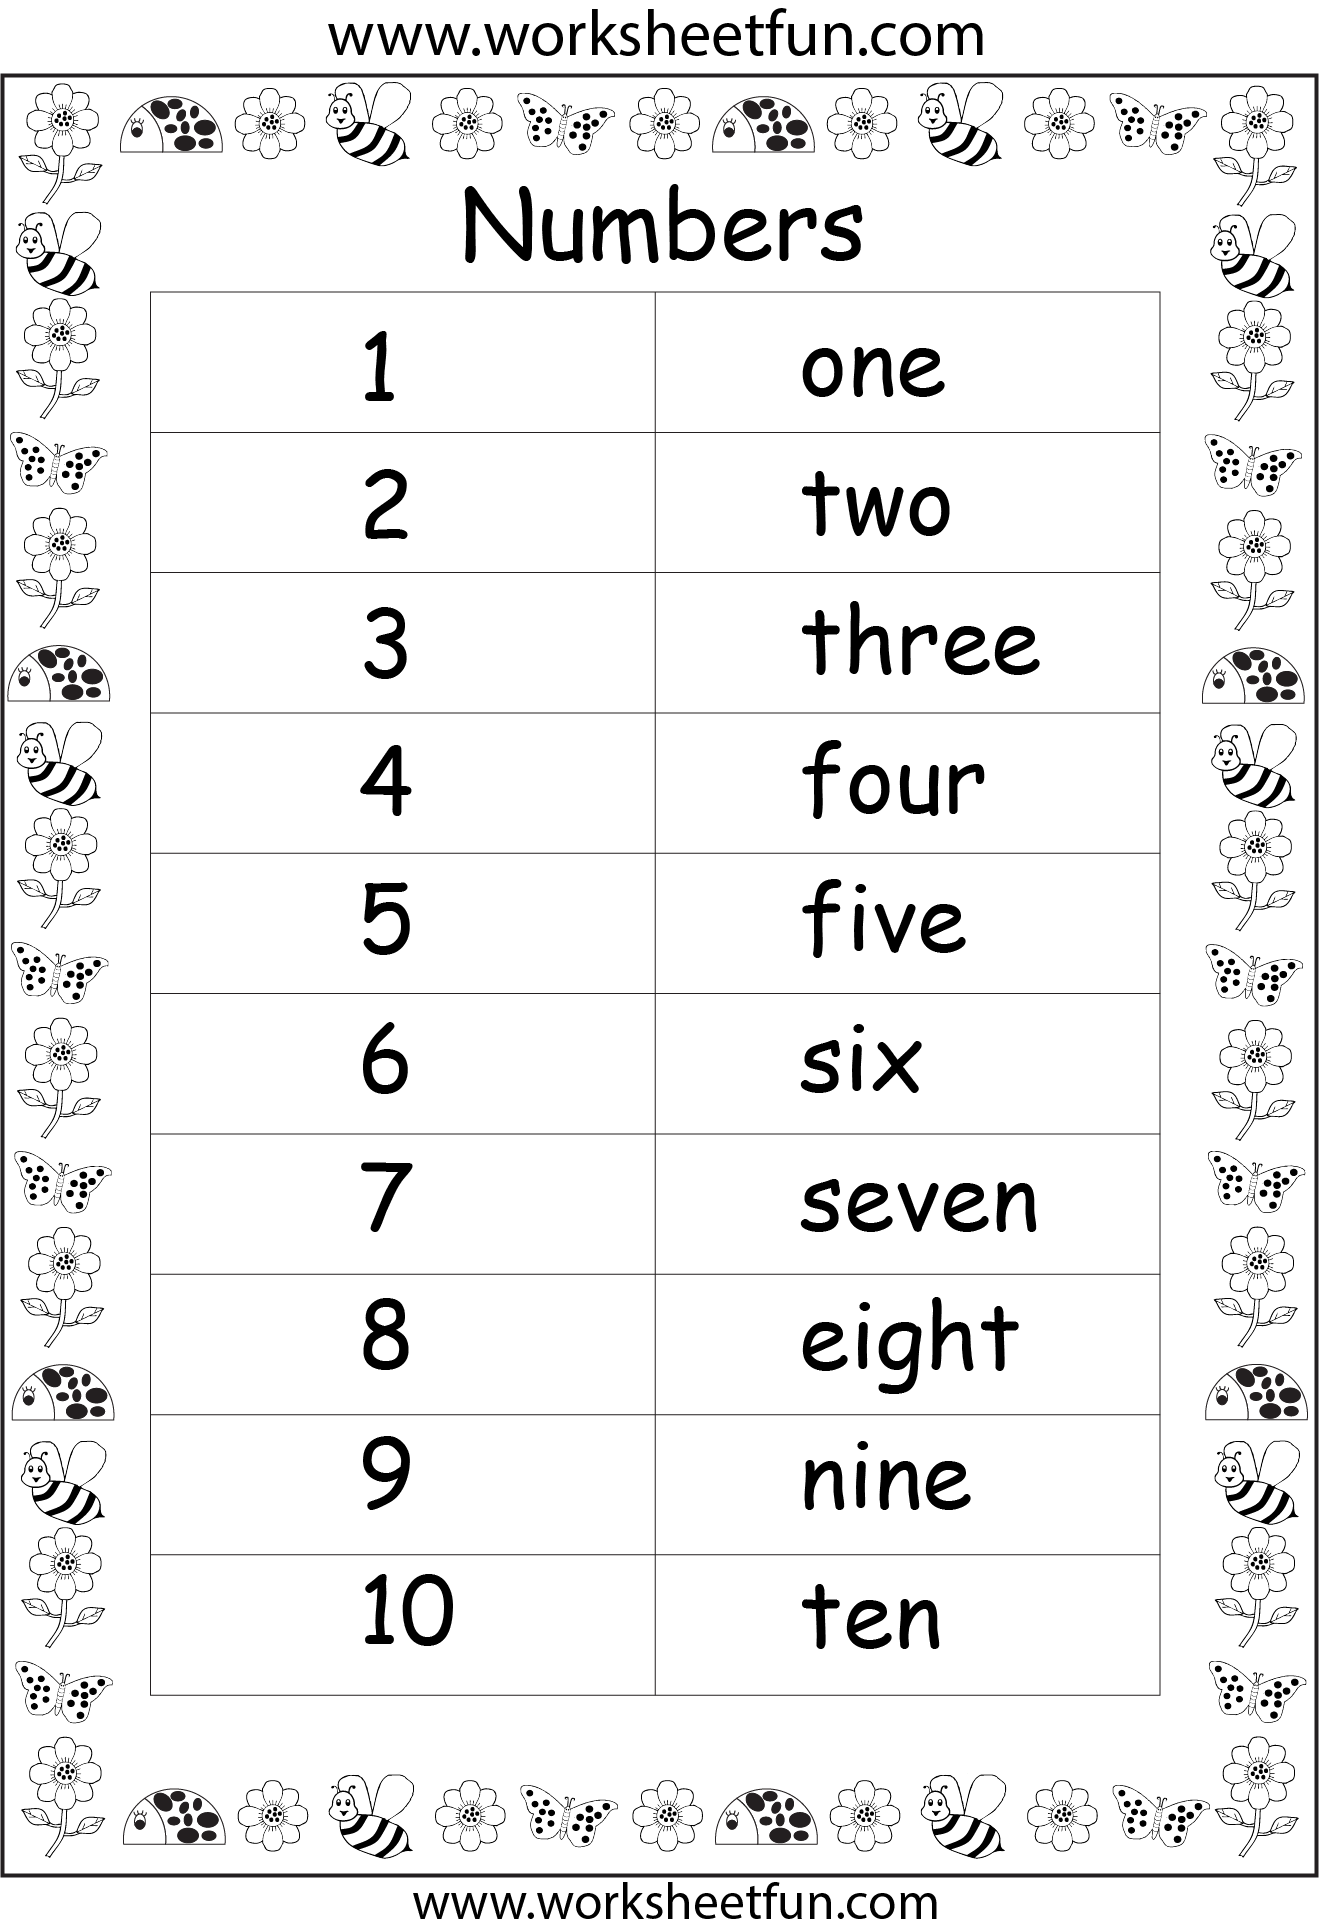 numbers-in-words-1-10-one-worksheet-free-printable-worksheets